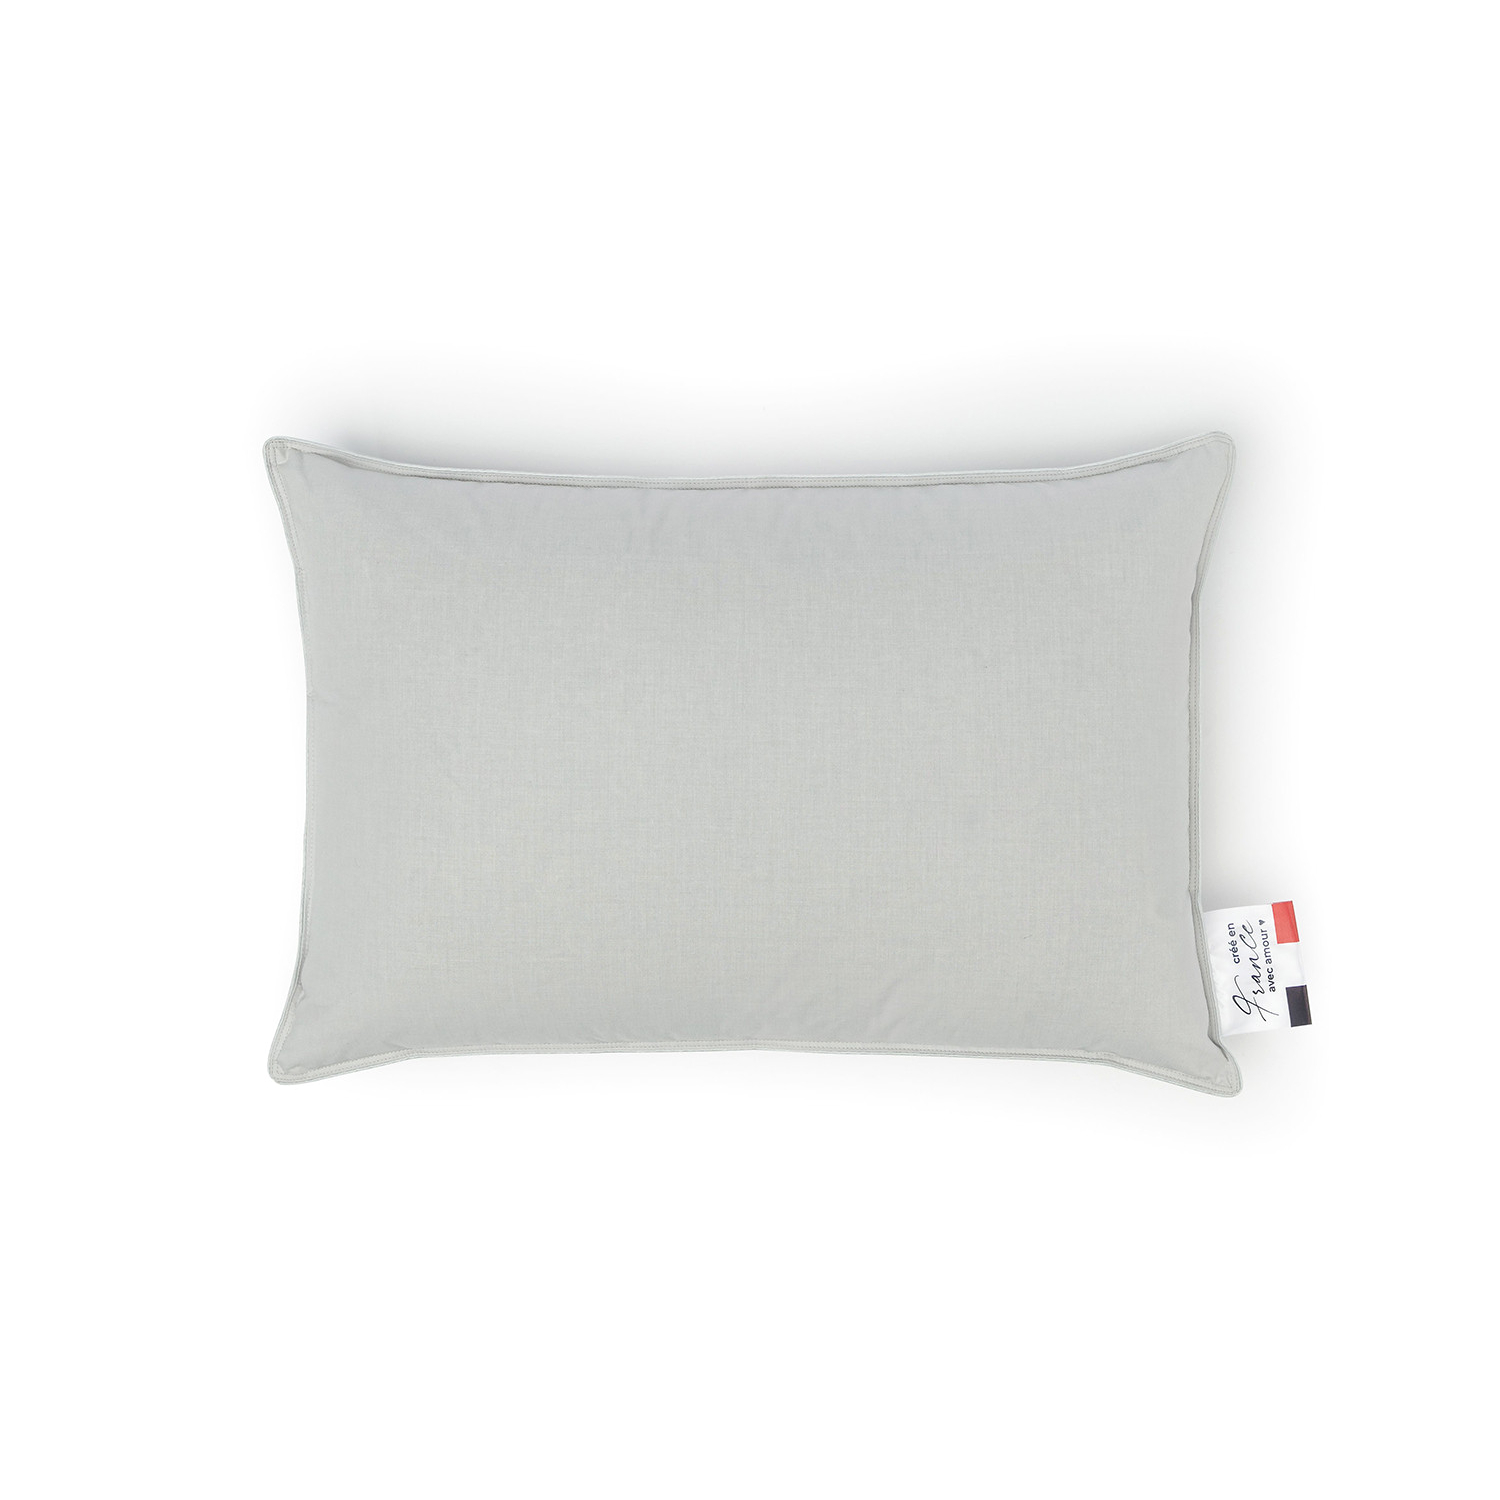 Пуховая подушка Marc Anri Bretagne серая 50х70 см (МН1076), цвет серый - фото 3